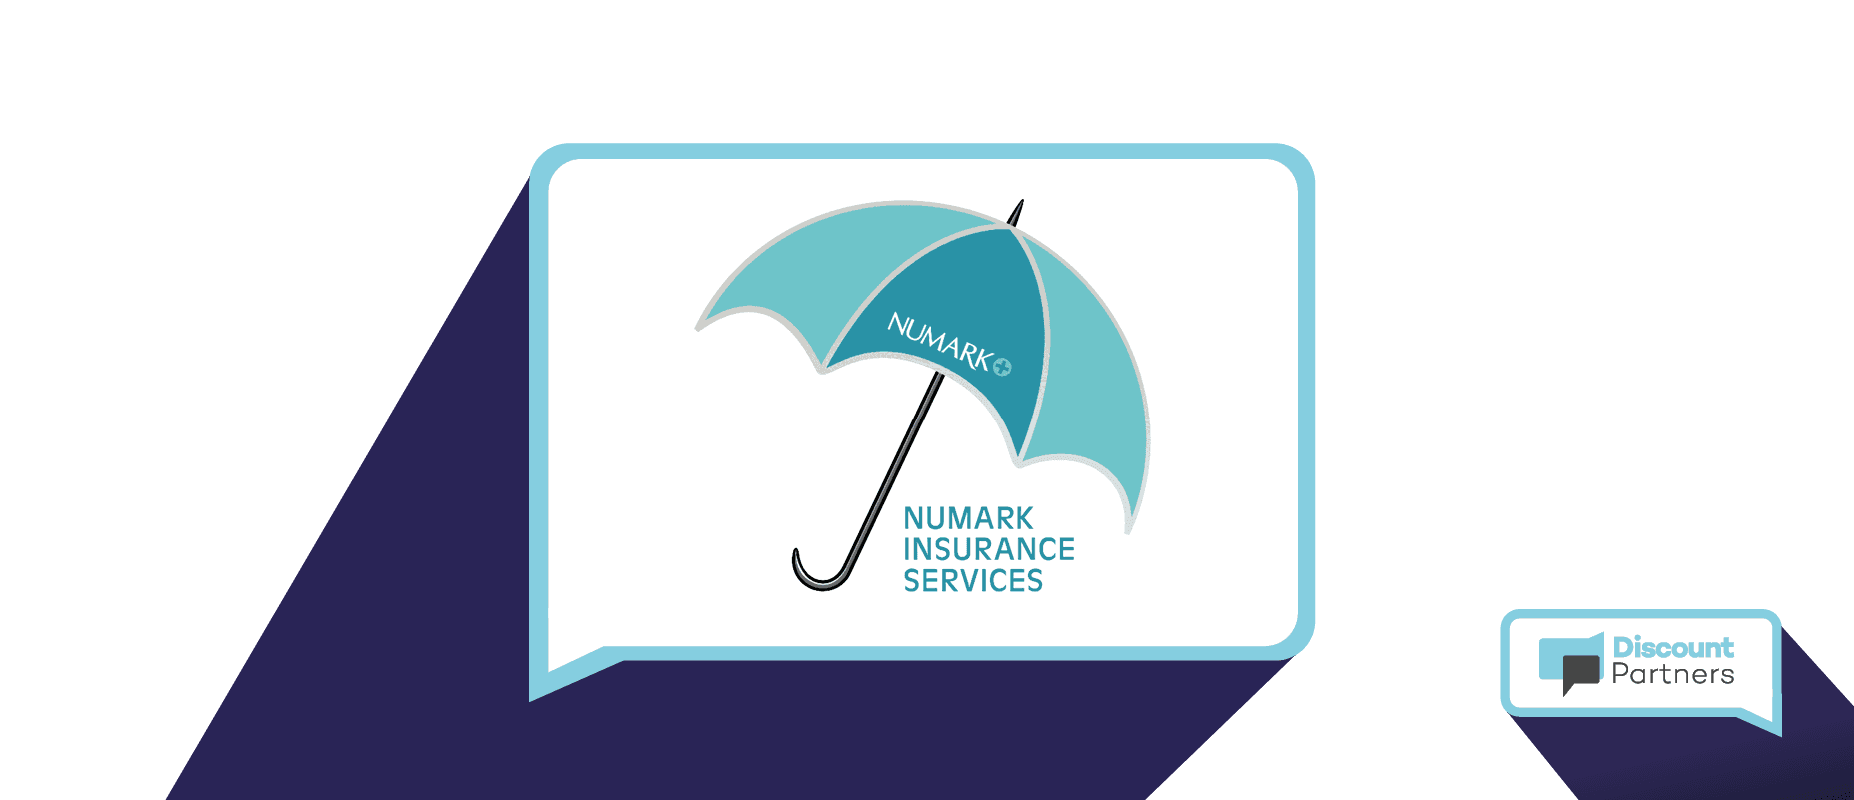 Numark Insurance Services